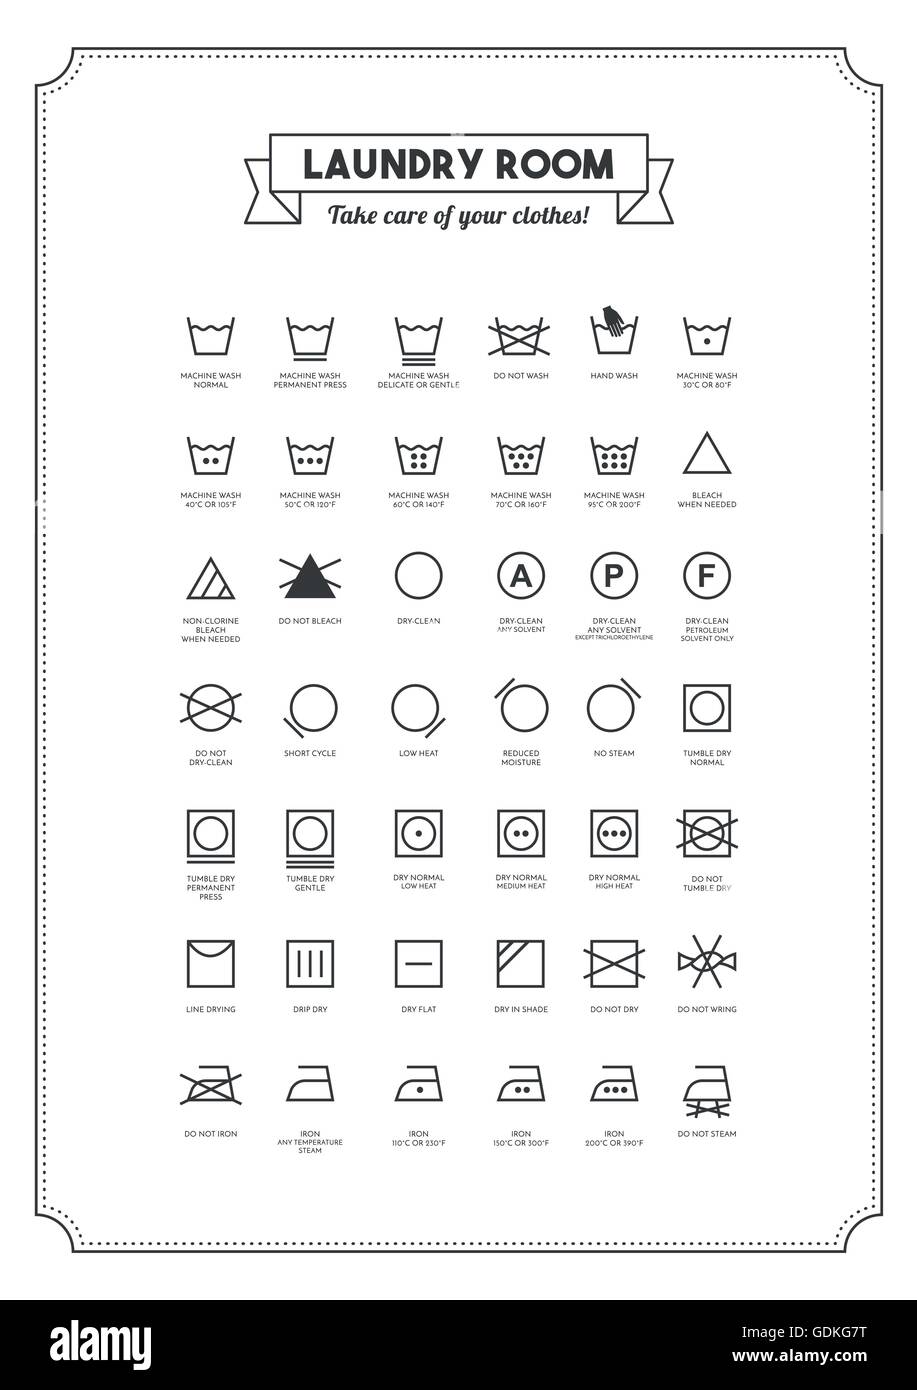 Simboli della lavanderia immagini e fotografie stock ad alta risoluzione -  Alamy